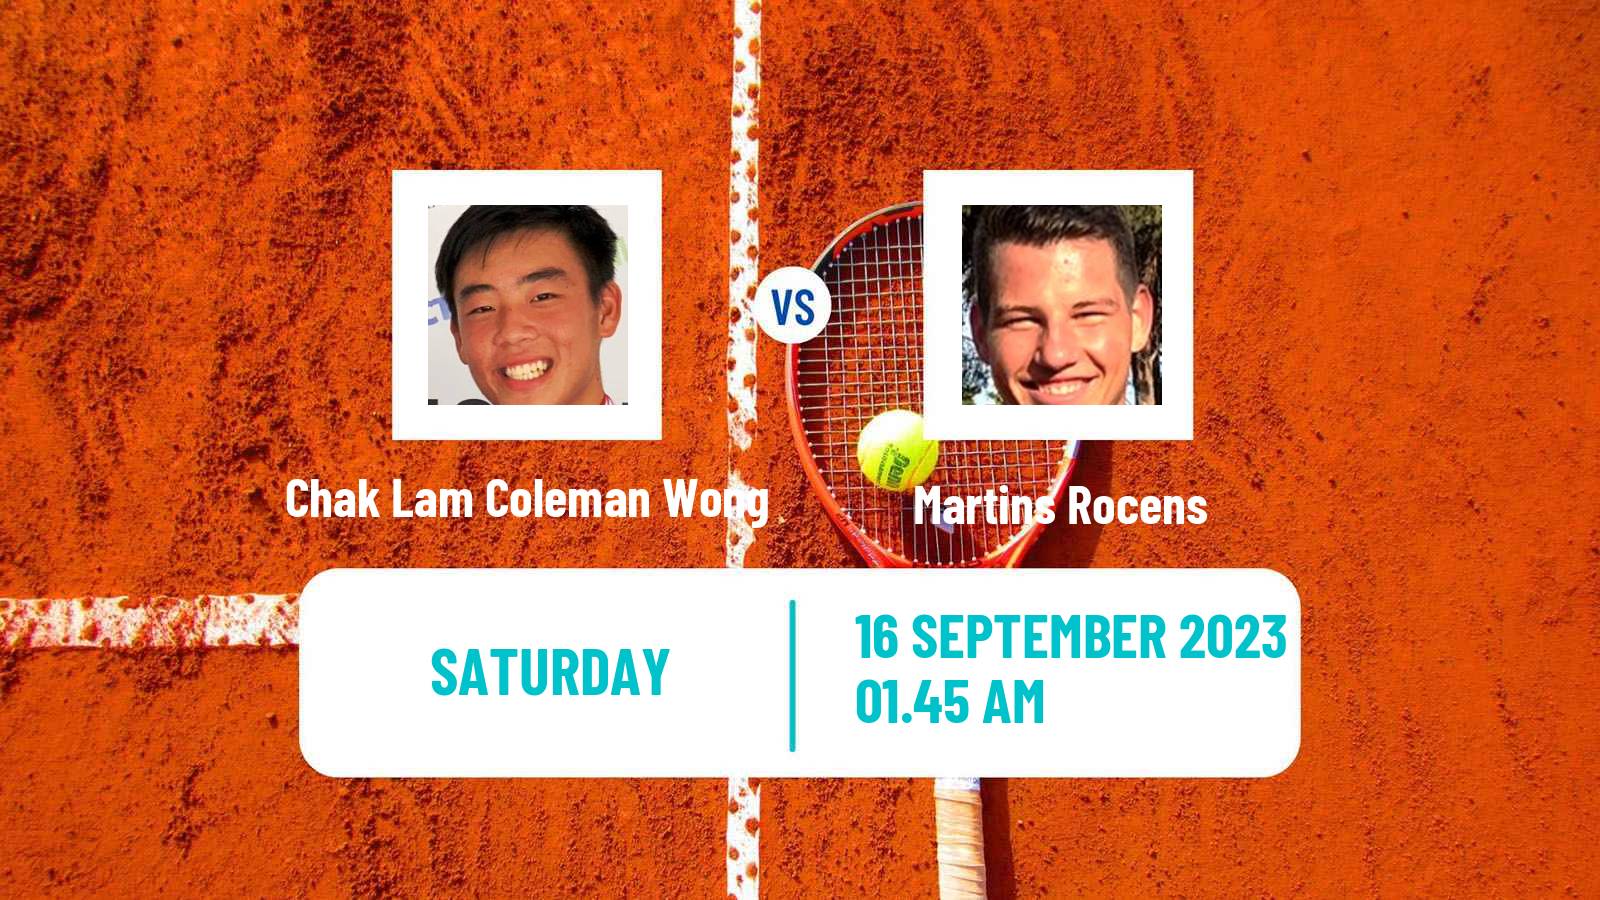 Tennis Davis Cup World Group II Chak Lam Coleman Wong - Martins Rocens